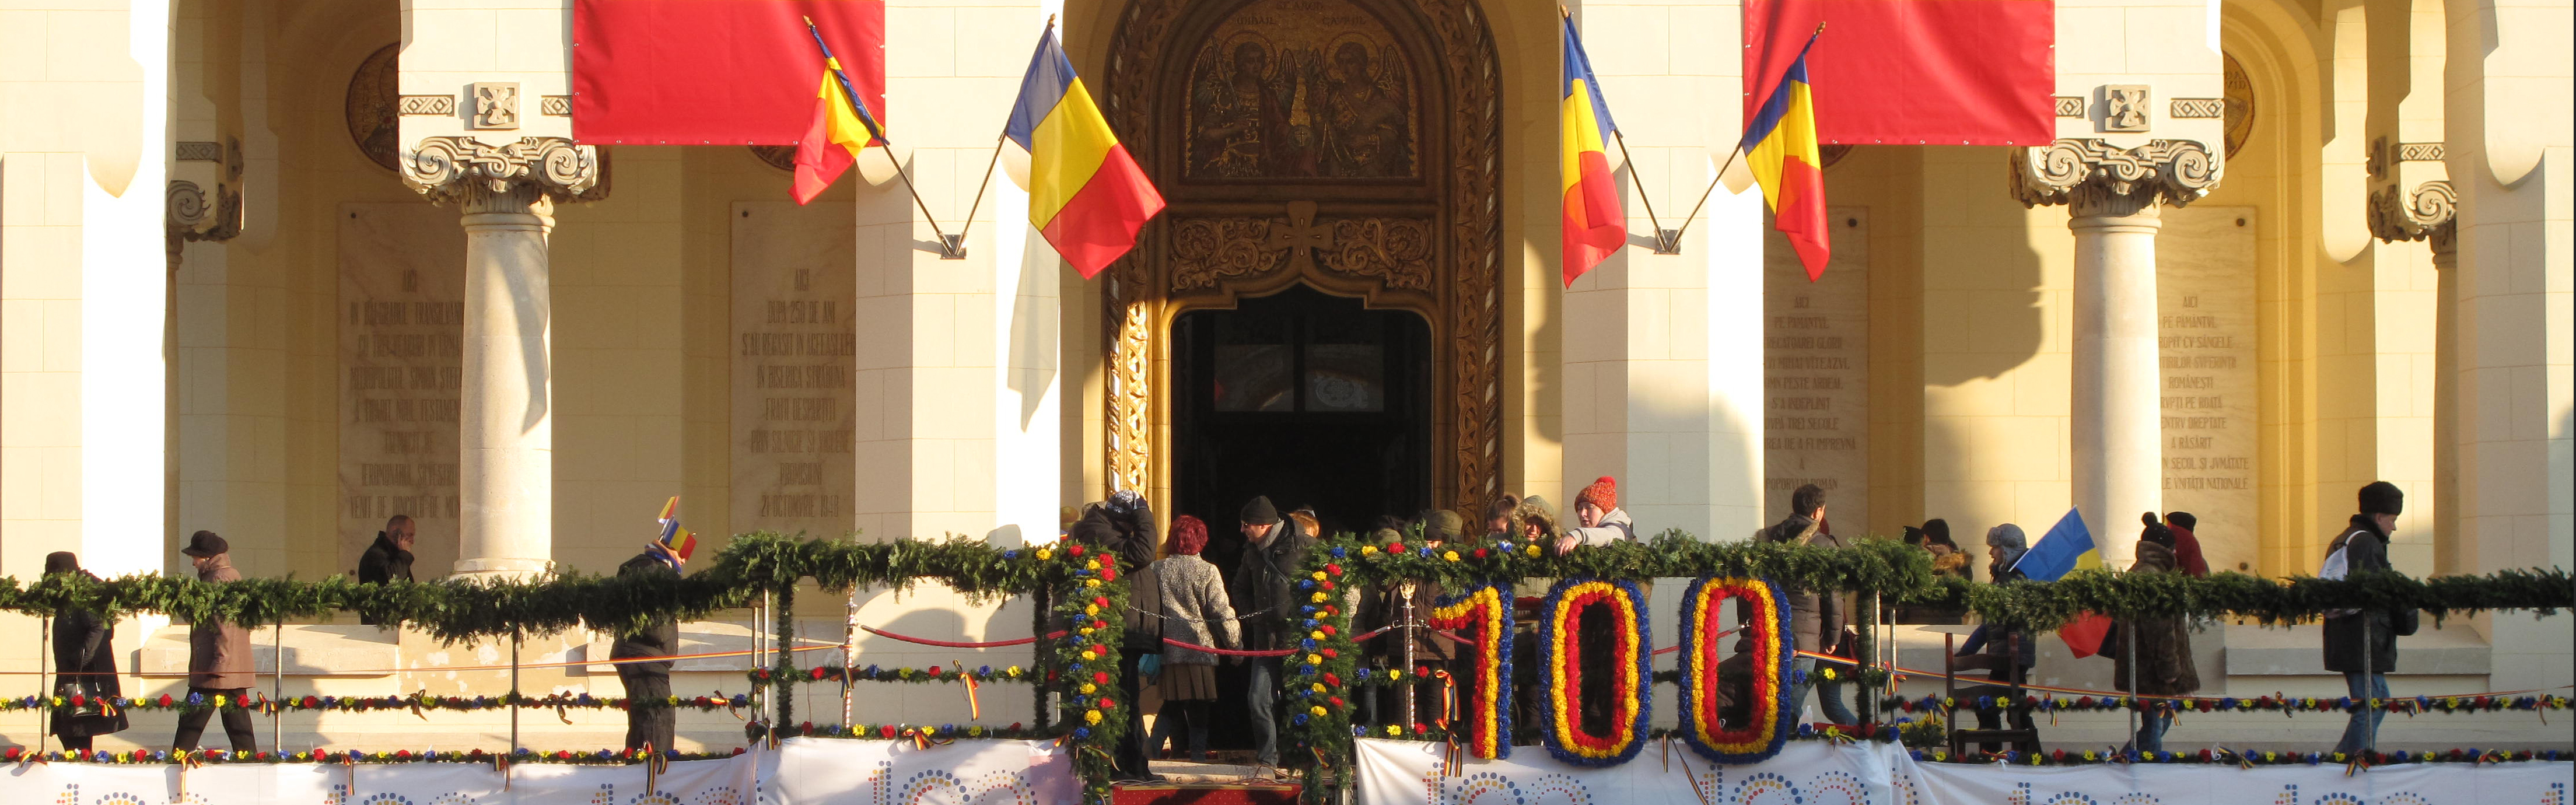 Erdély és Románia „uniójának” 100 éves évfordulója, 2018. december 1.